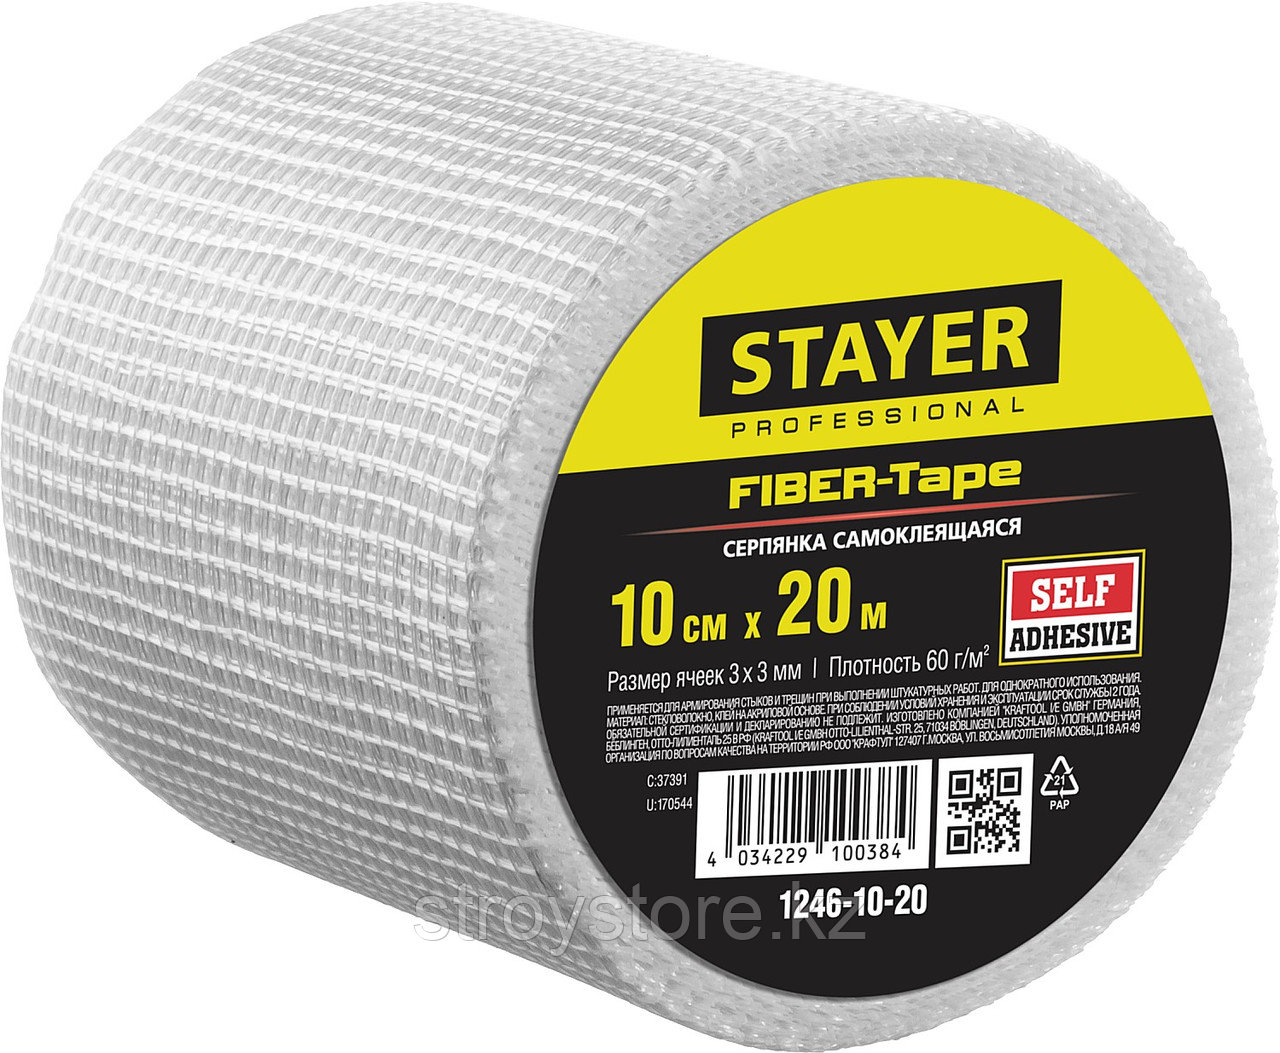 STAYER FIBER-Tape 10см х 20м 3х3 мм, Самоклеящаяся серпянка, PROFESSIONAL (1246-10-20)